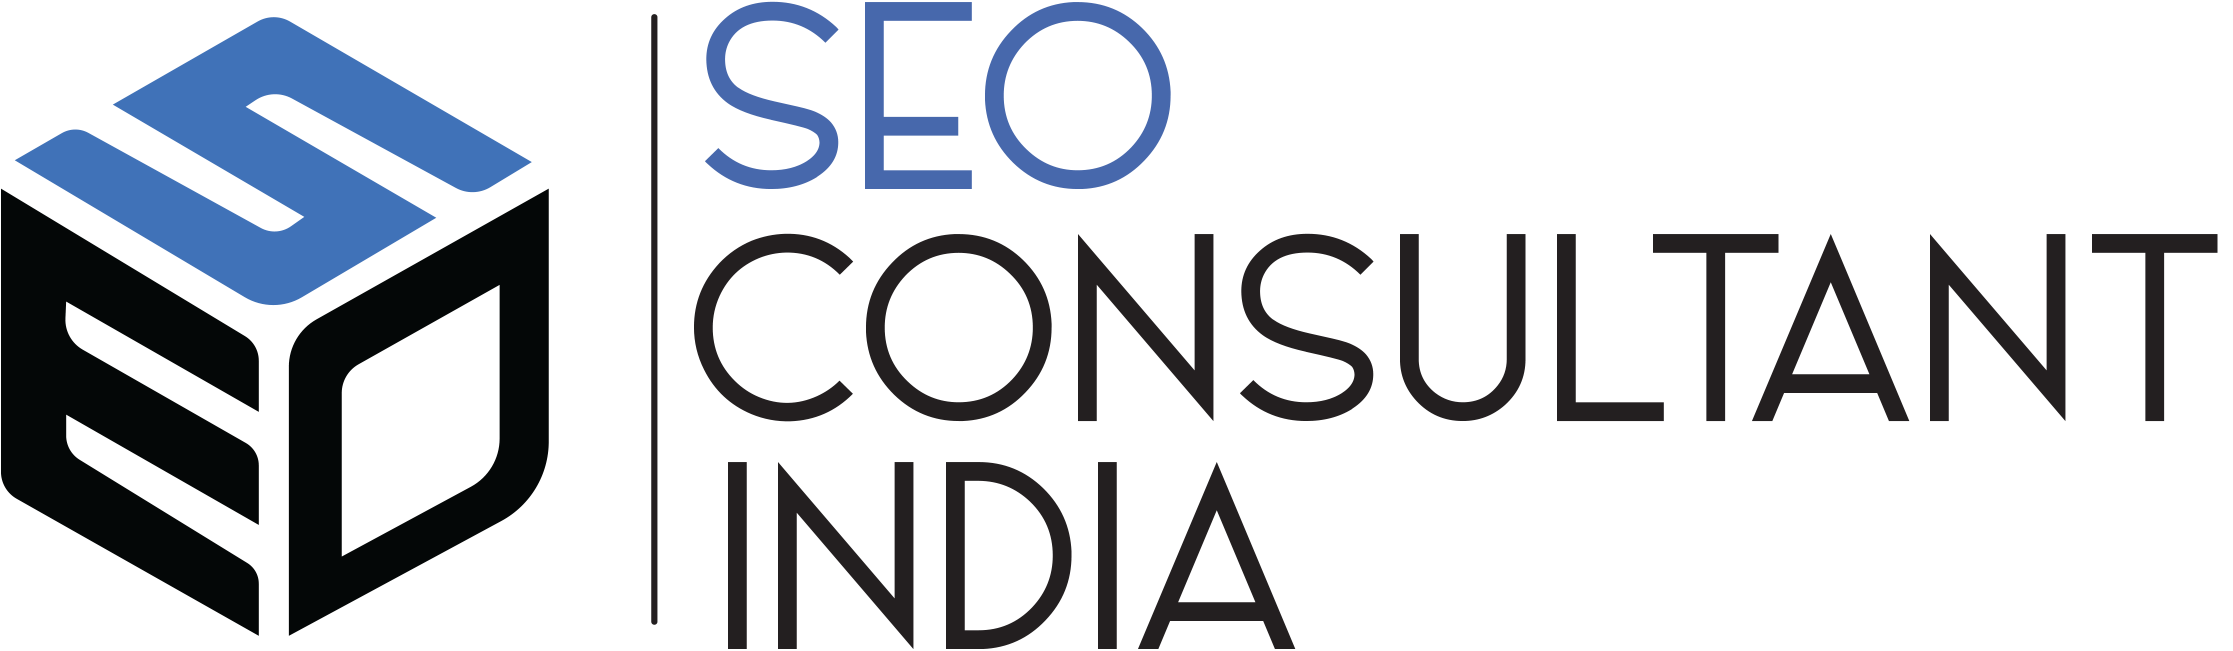 SEO Consultant in India